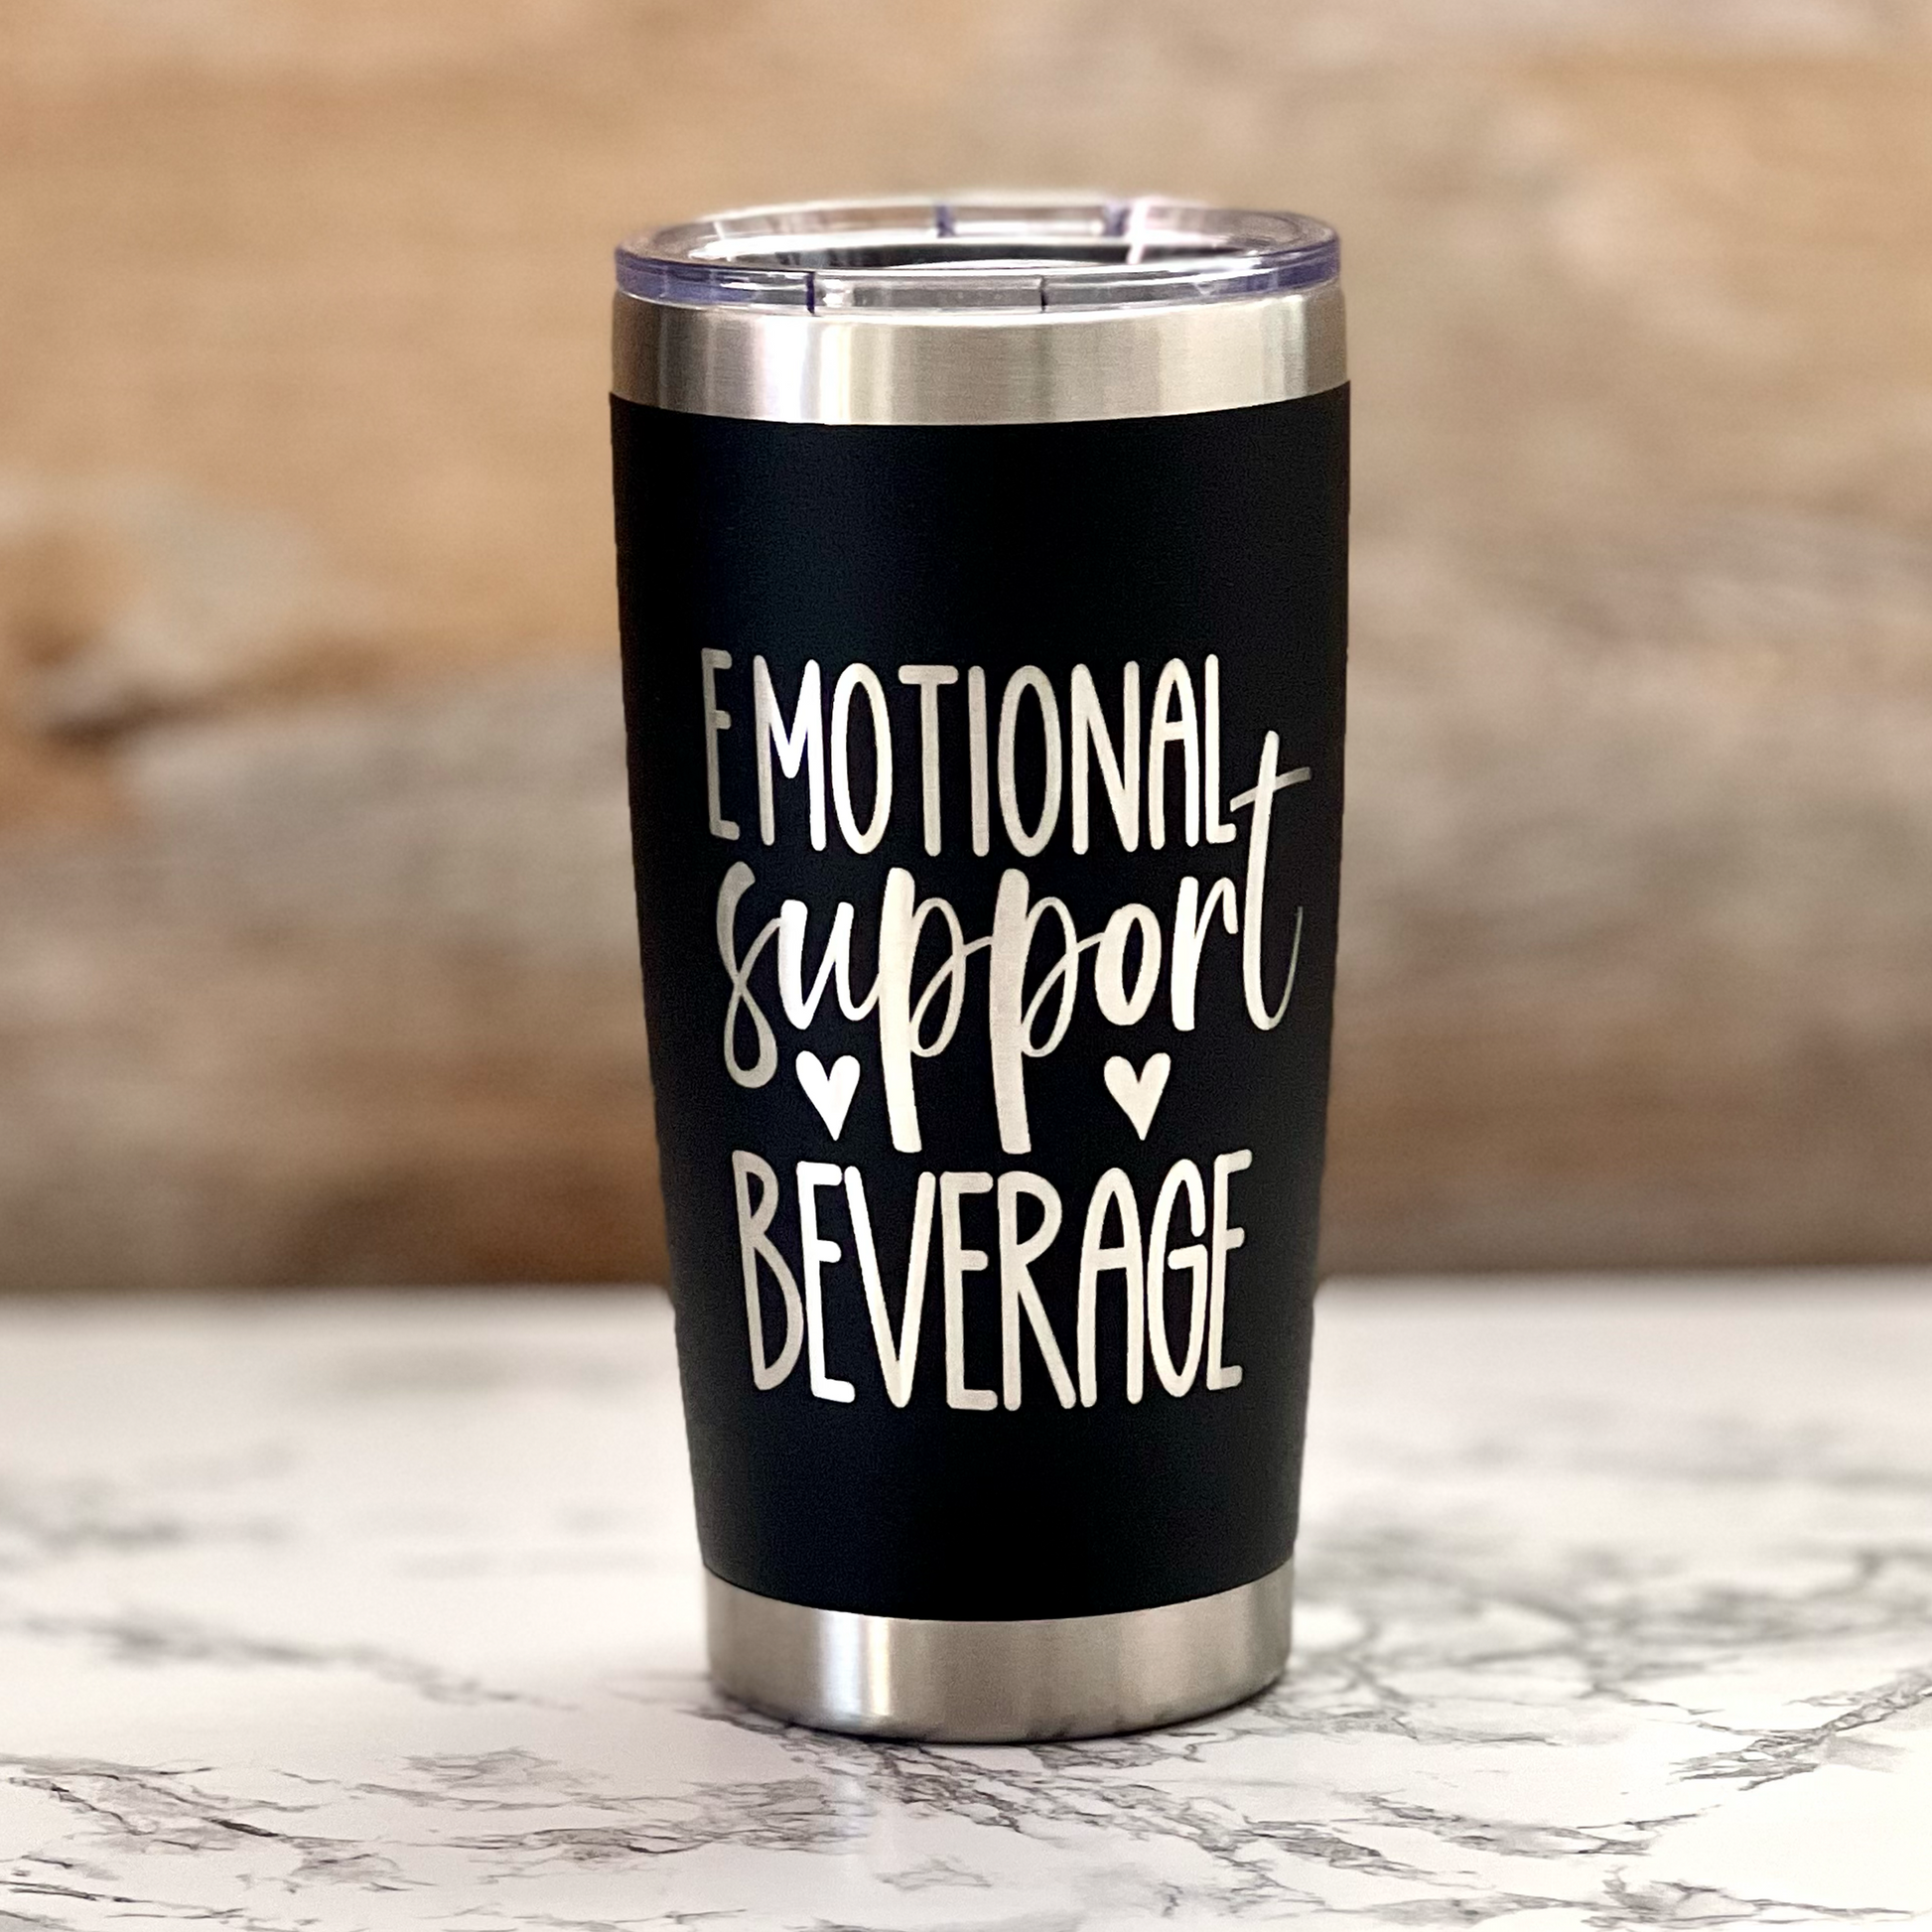 Funny laser engraved "Emotional Support Beverage" travel mug - River Barn Designs